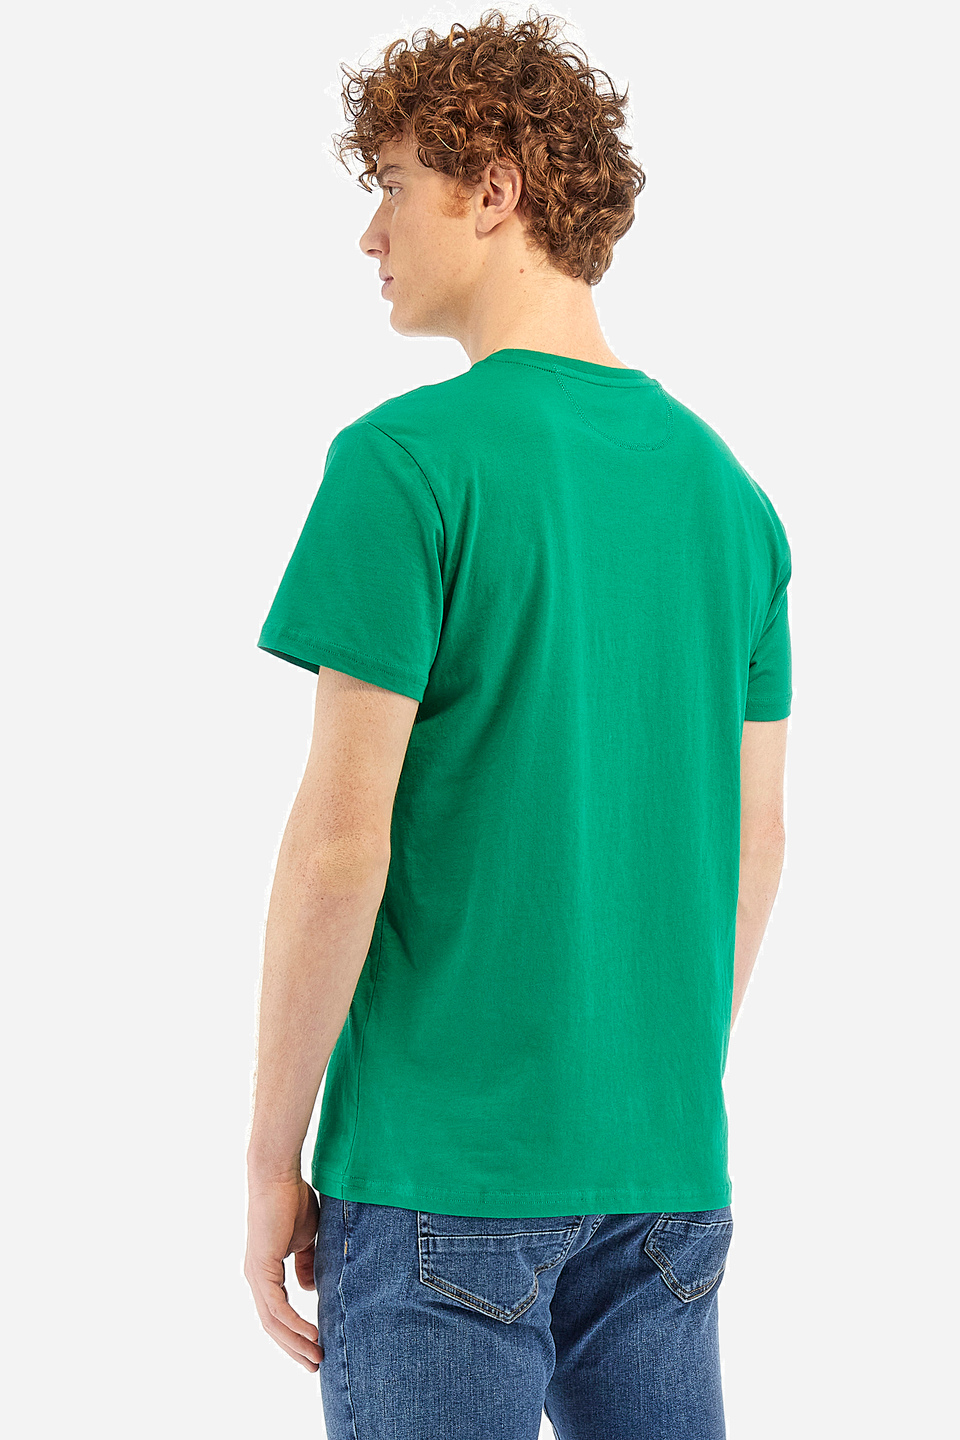 Herren-T-Shirt Regular Fit - Wakefield | La Martina - Official Online Shop